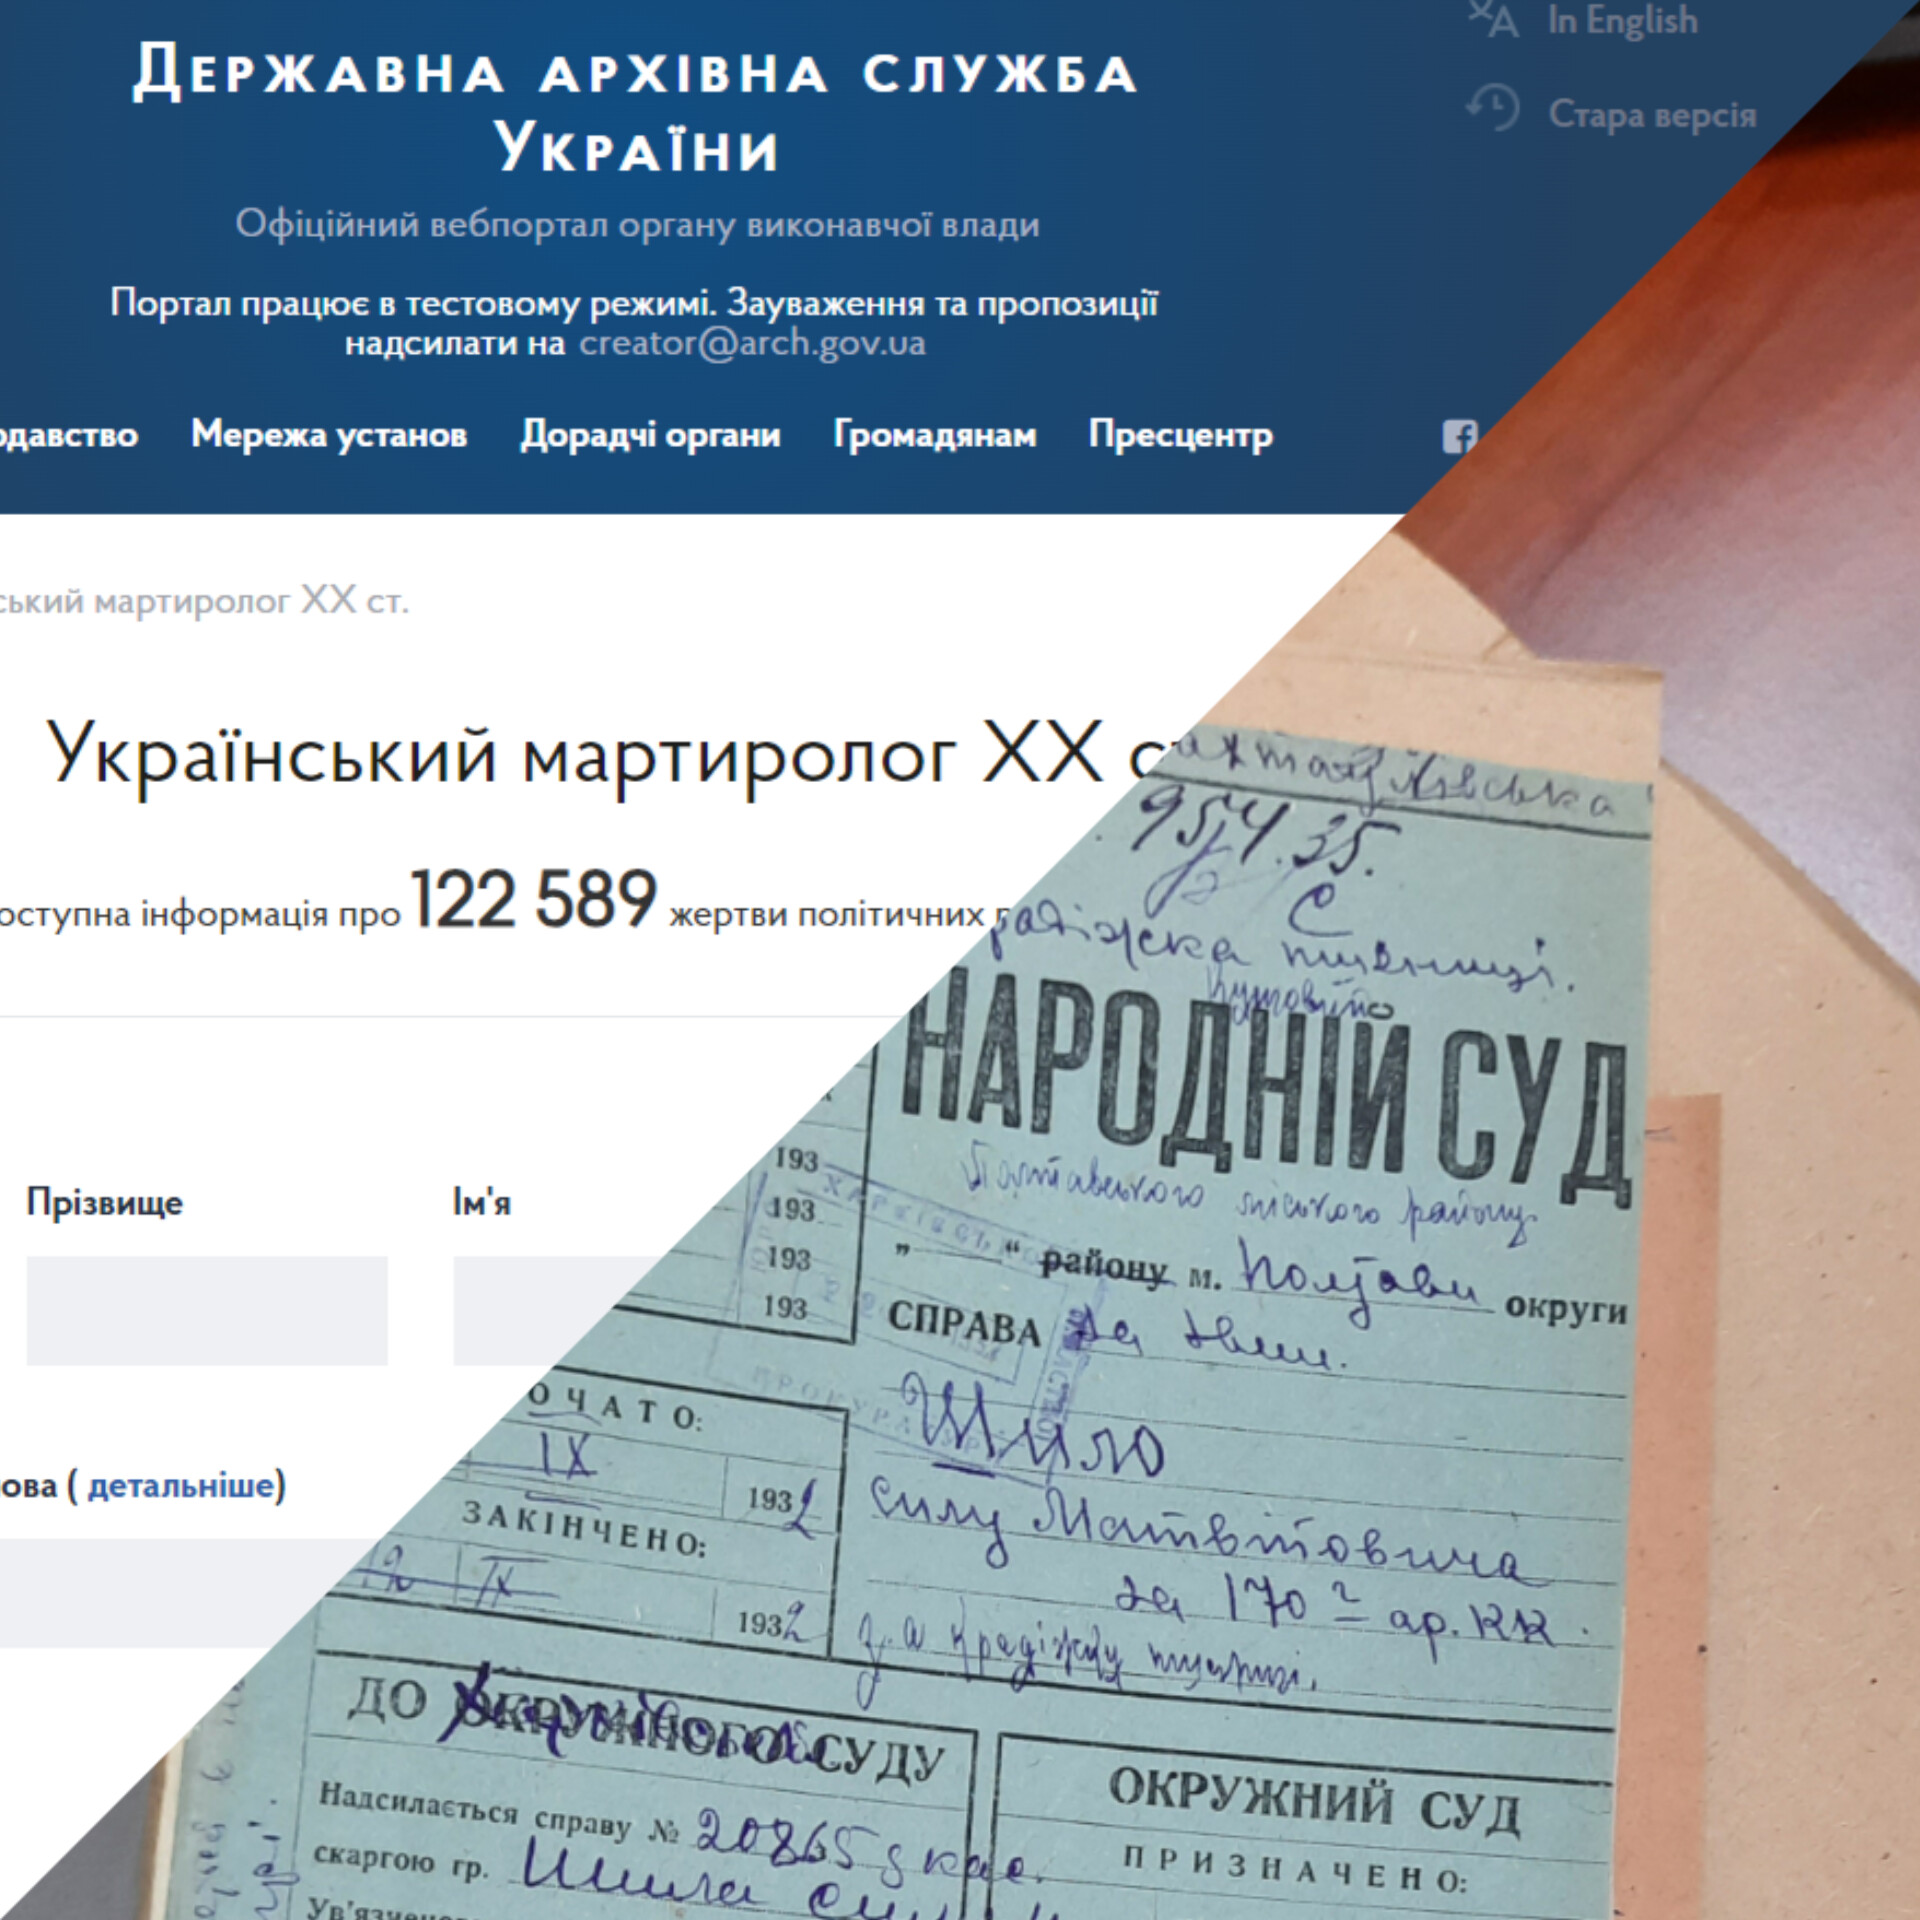 Державний архів Полтавської області працює над архівно-пошуковим проєктом «Український мартиролог ХХ століття»